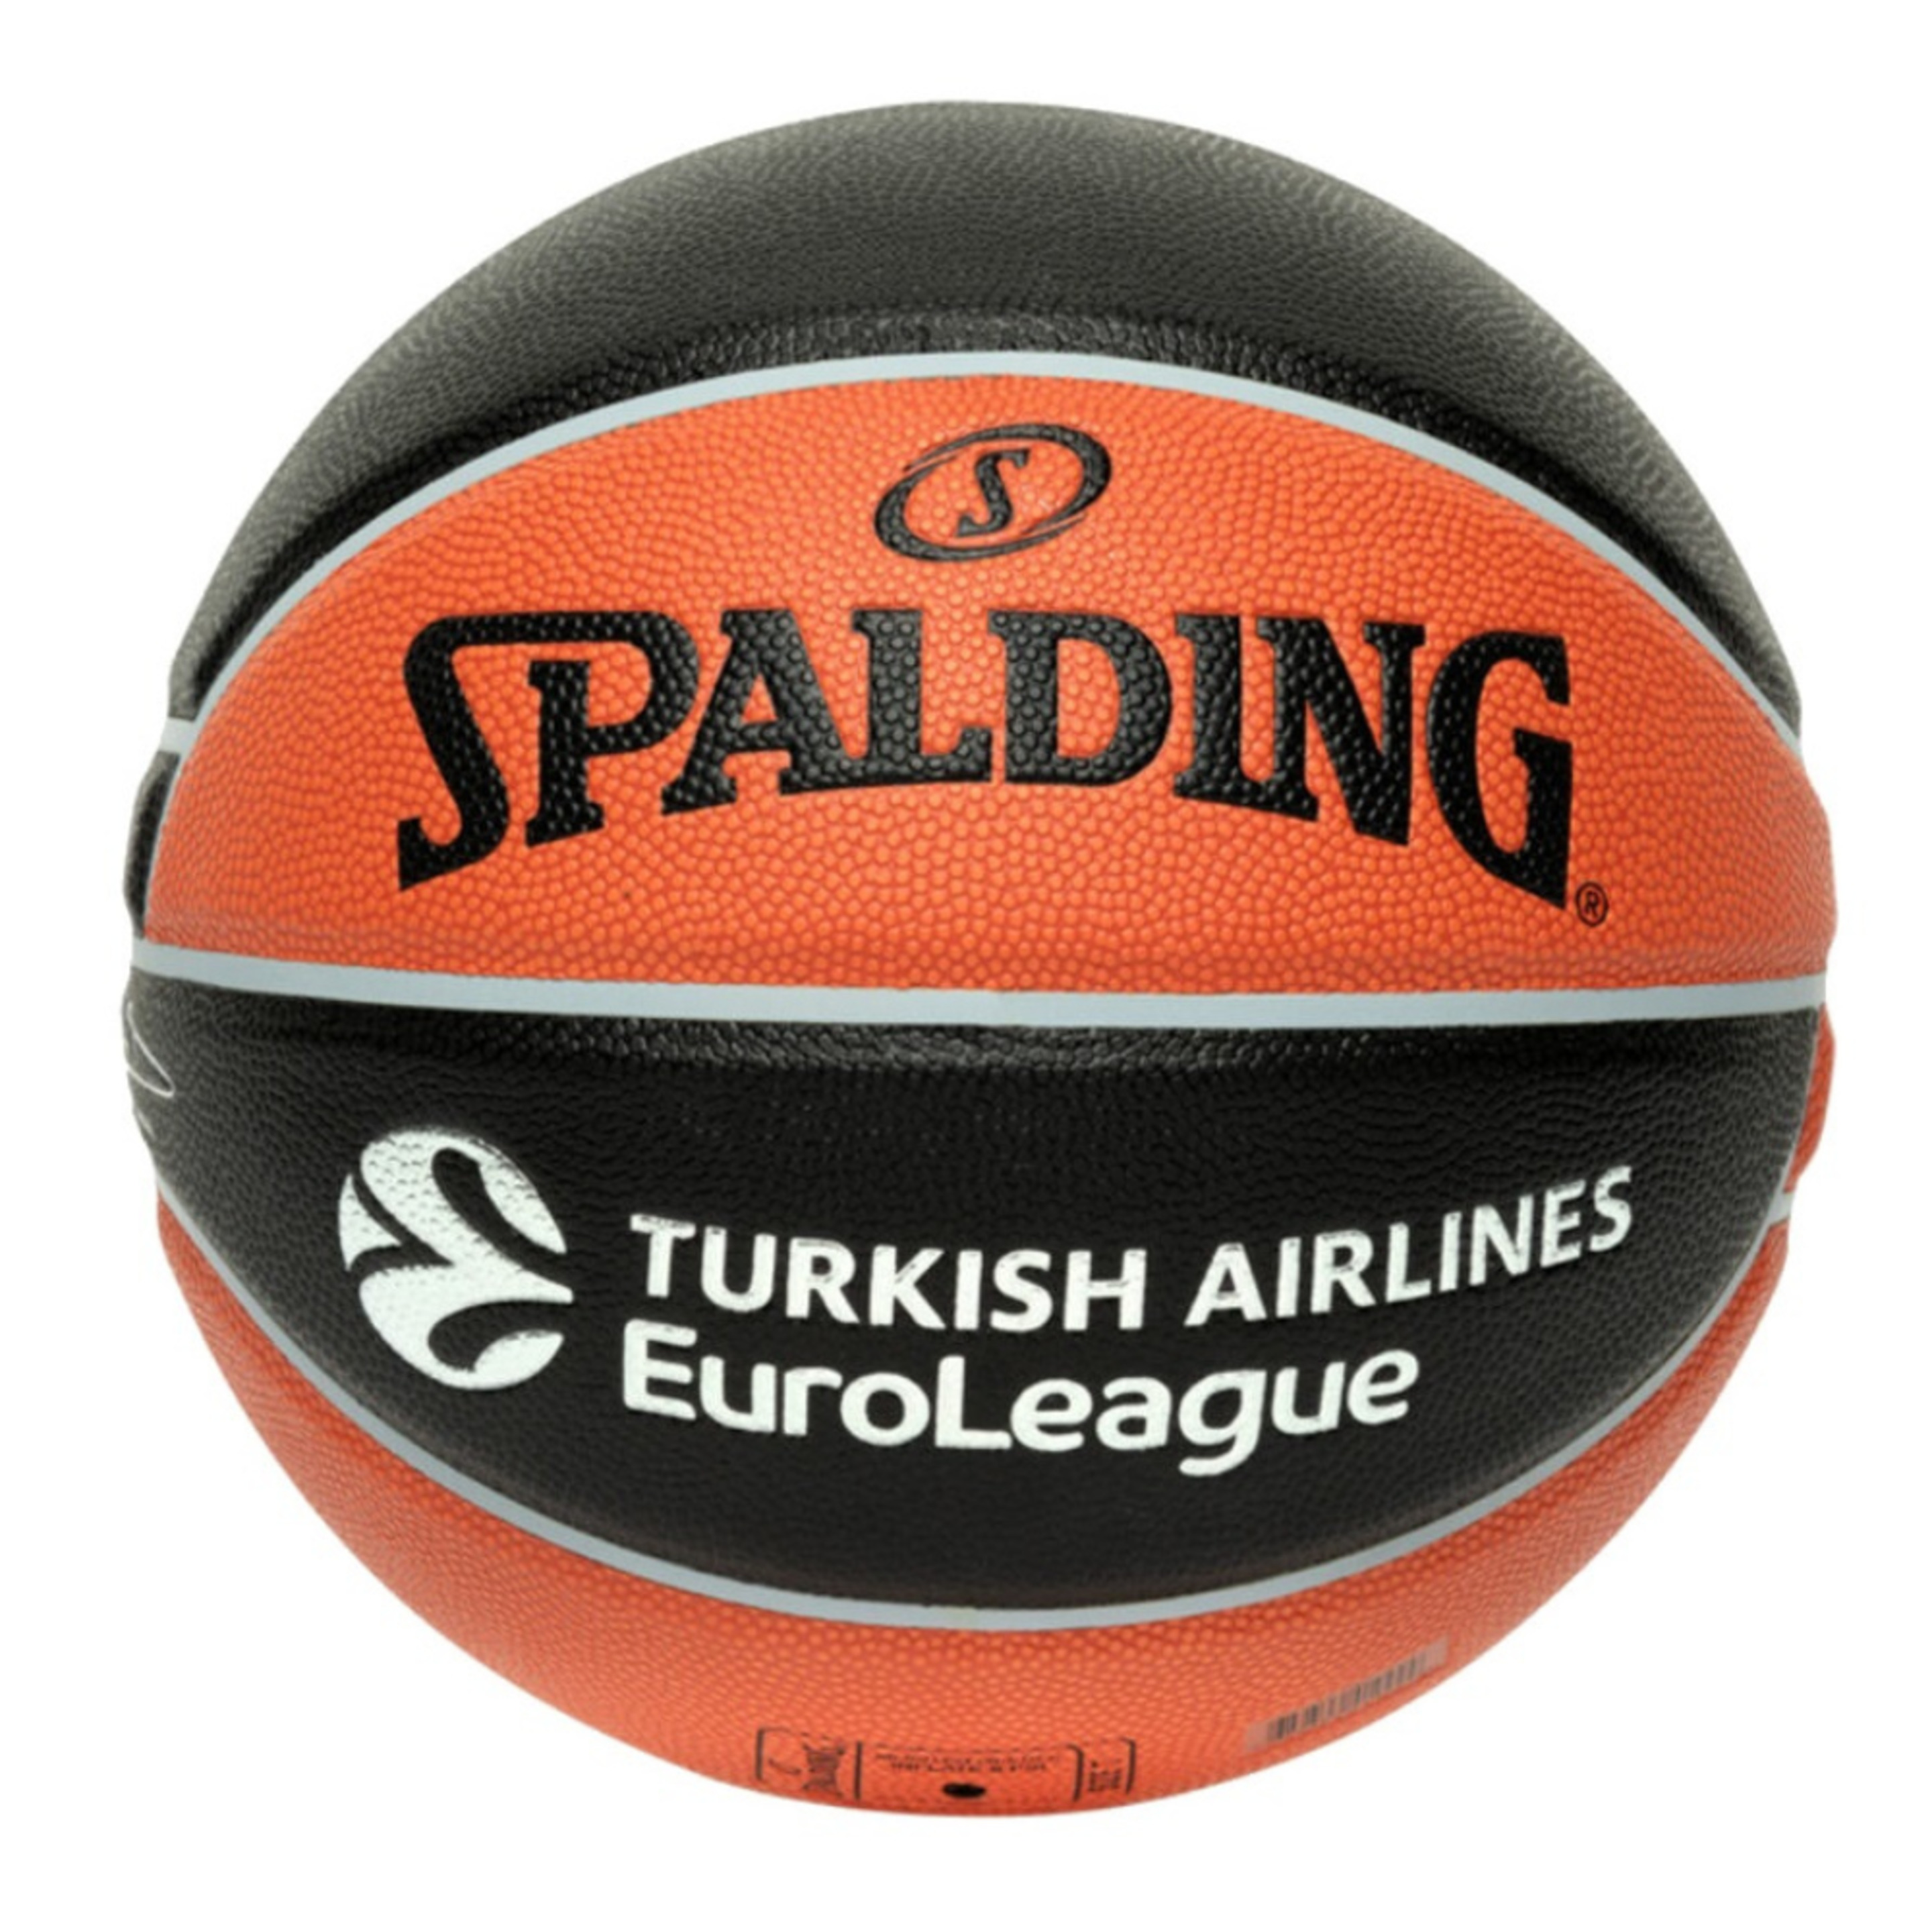 Balón De Baloncesto Spalding Excel Tf-500 Euroleague Talla 7